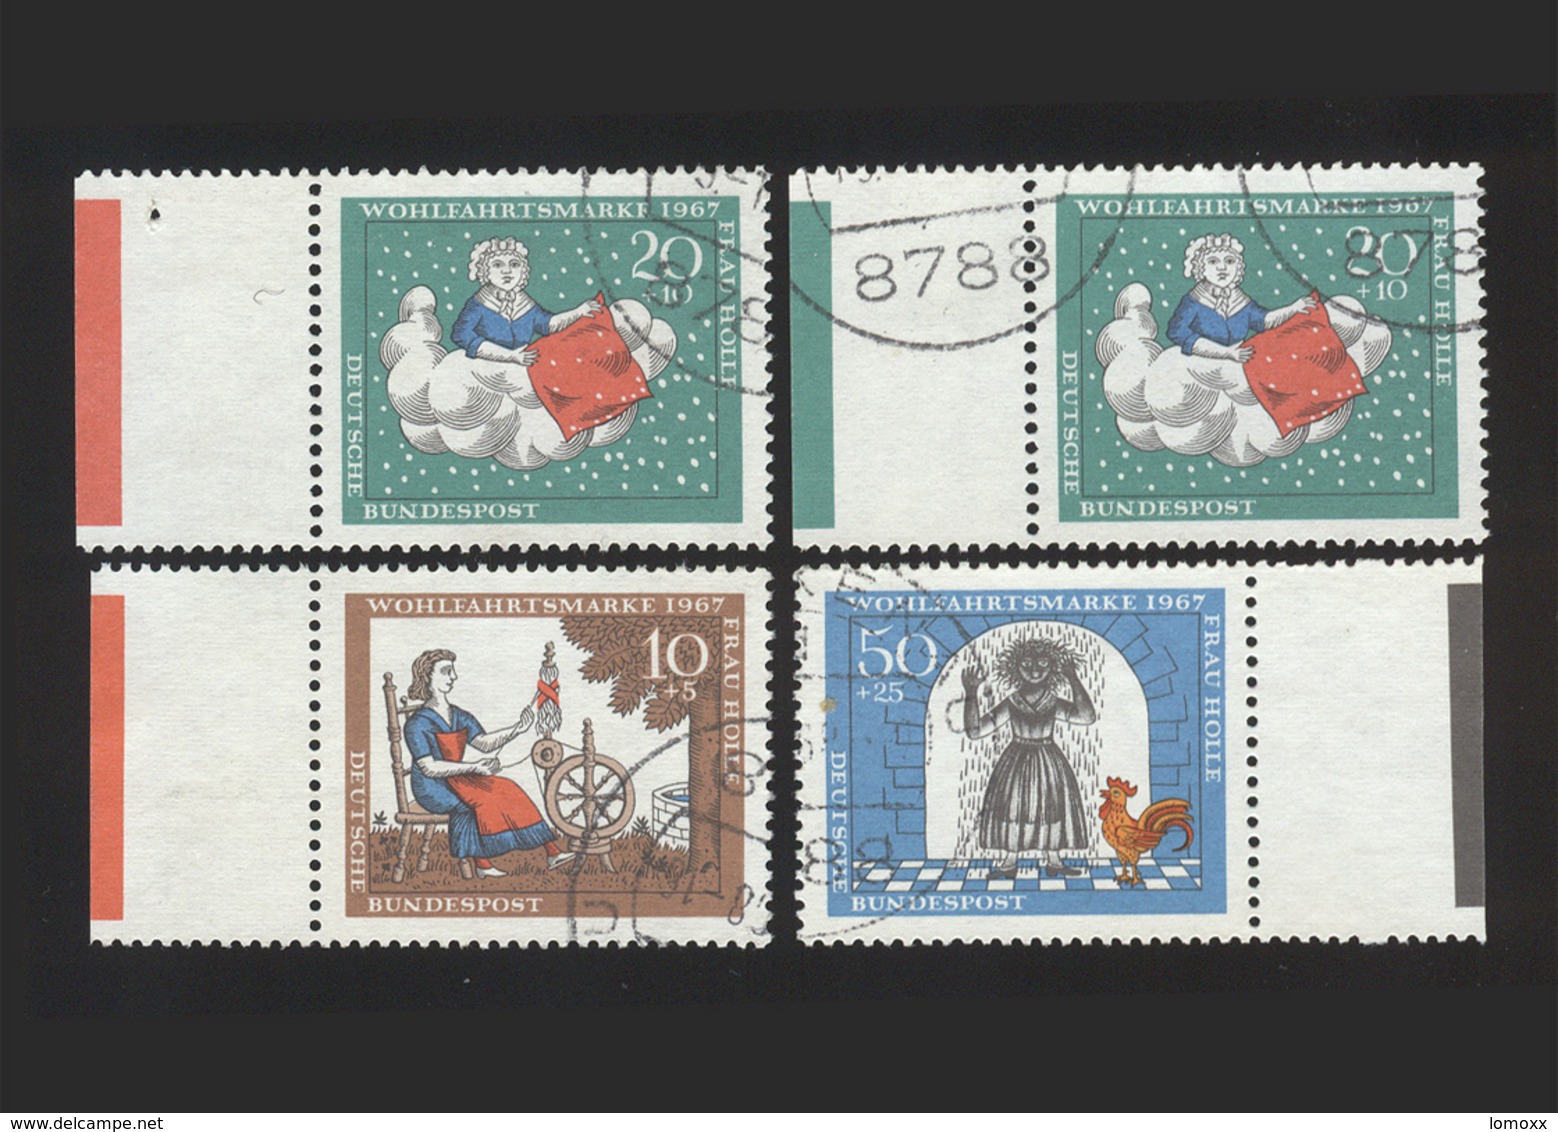 BRD 1967, Michel-Nr. 538 / 2 X 539 / 541, Wohlfahrt 1967, Jeweils Bogenrand Mit Farbbalken, Gestempelt, Siehe Foto - Gebraucht